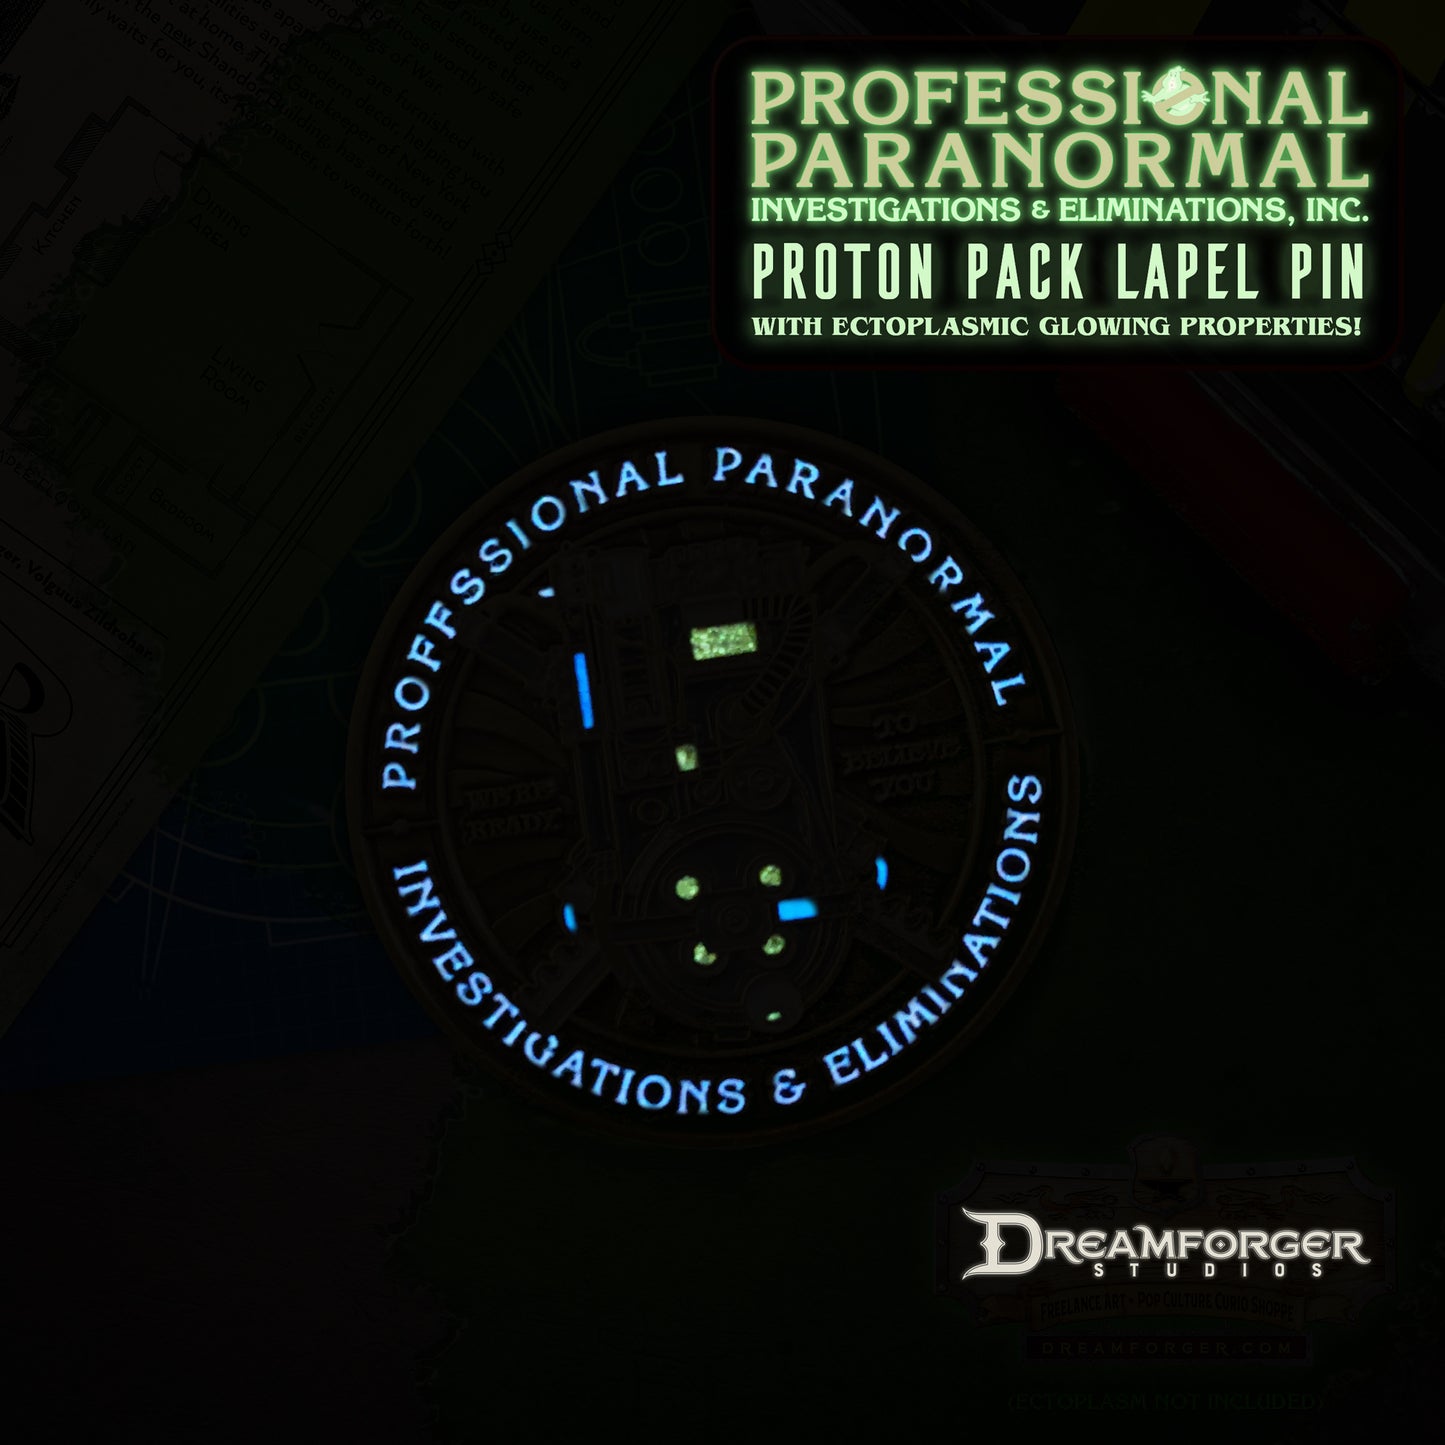 "PPI&E Proton Pack" Lapel Pin